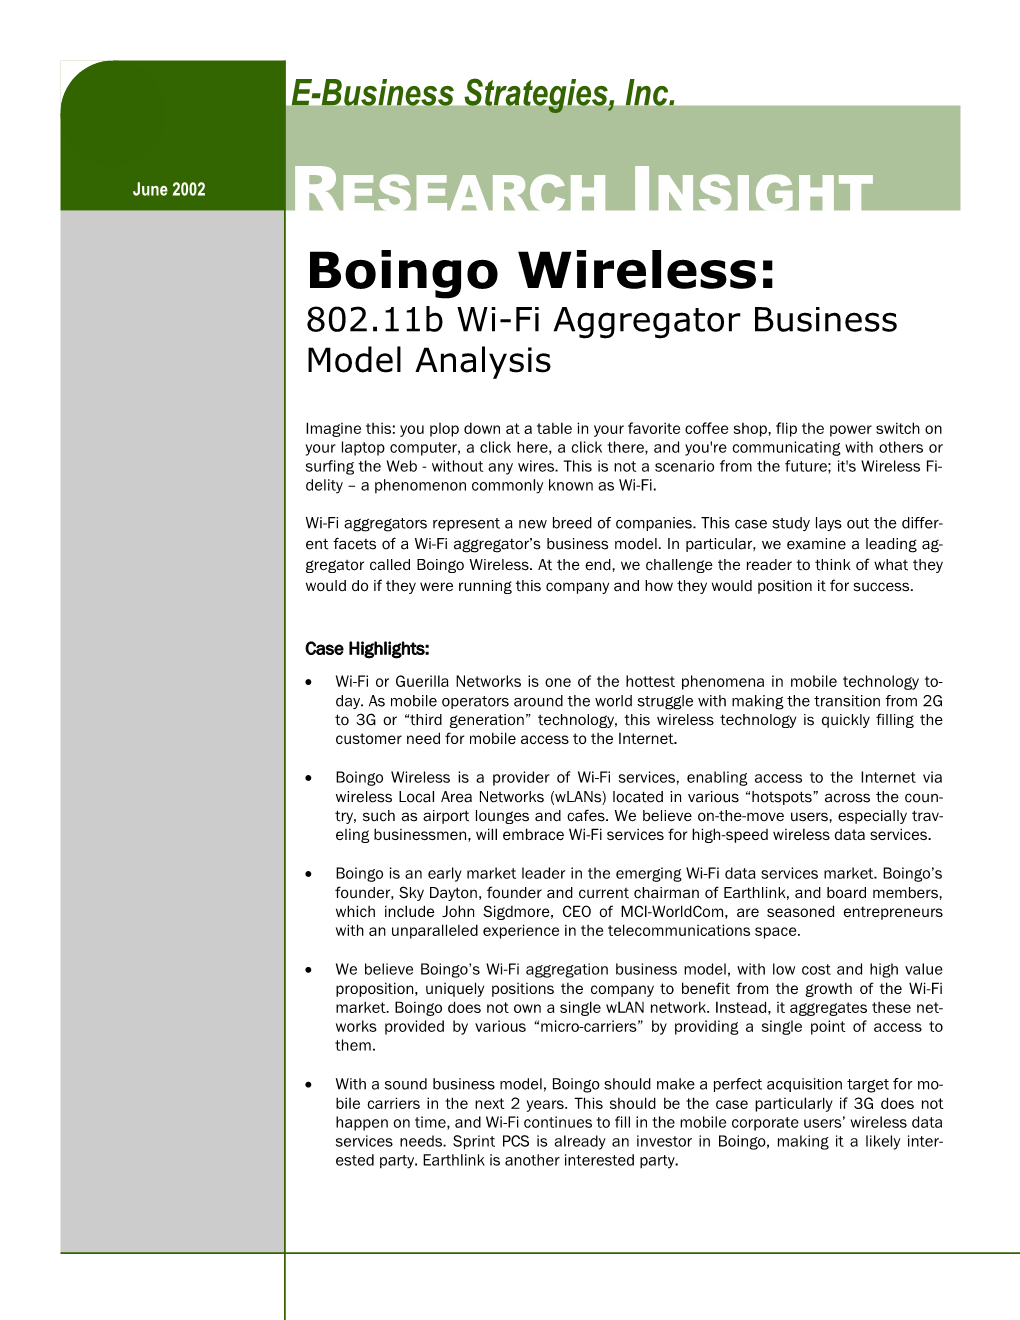 Boingo Wireless: 802.11B Wi-Fi Aggregator Business Model Analysis